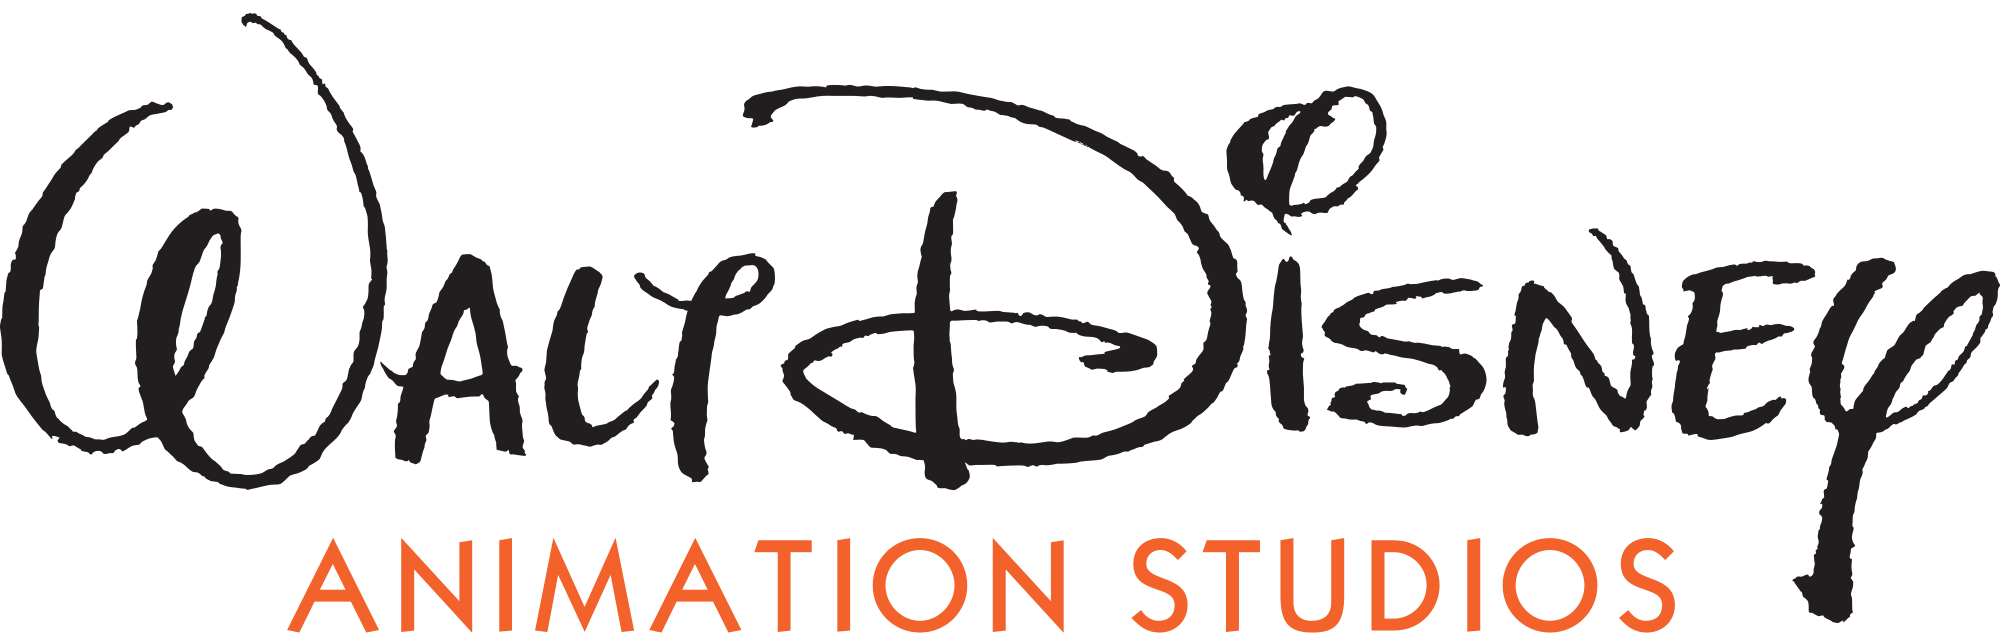 Walt_Disney_Animation_Studios_logo.png